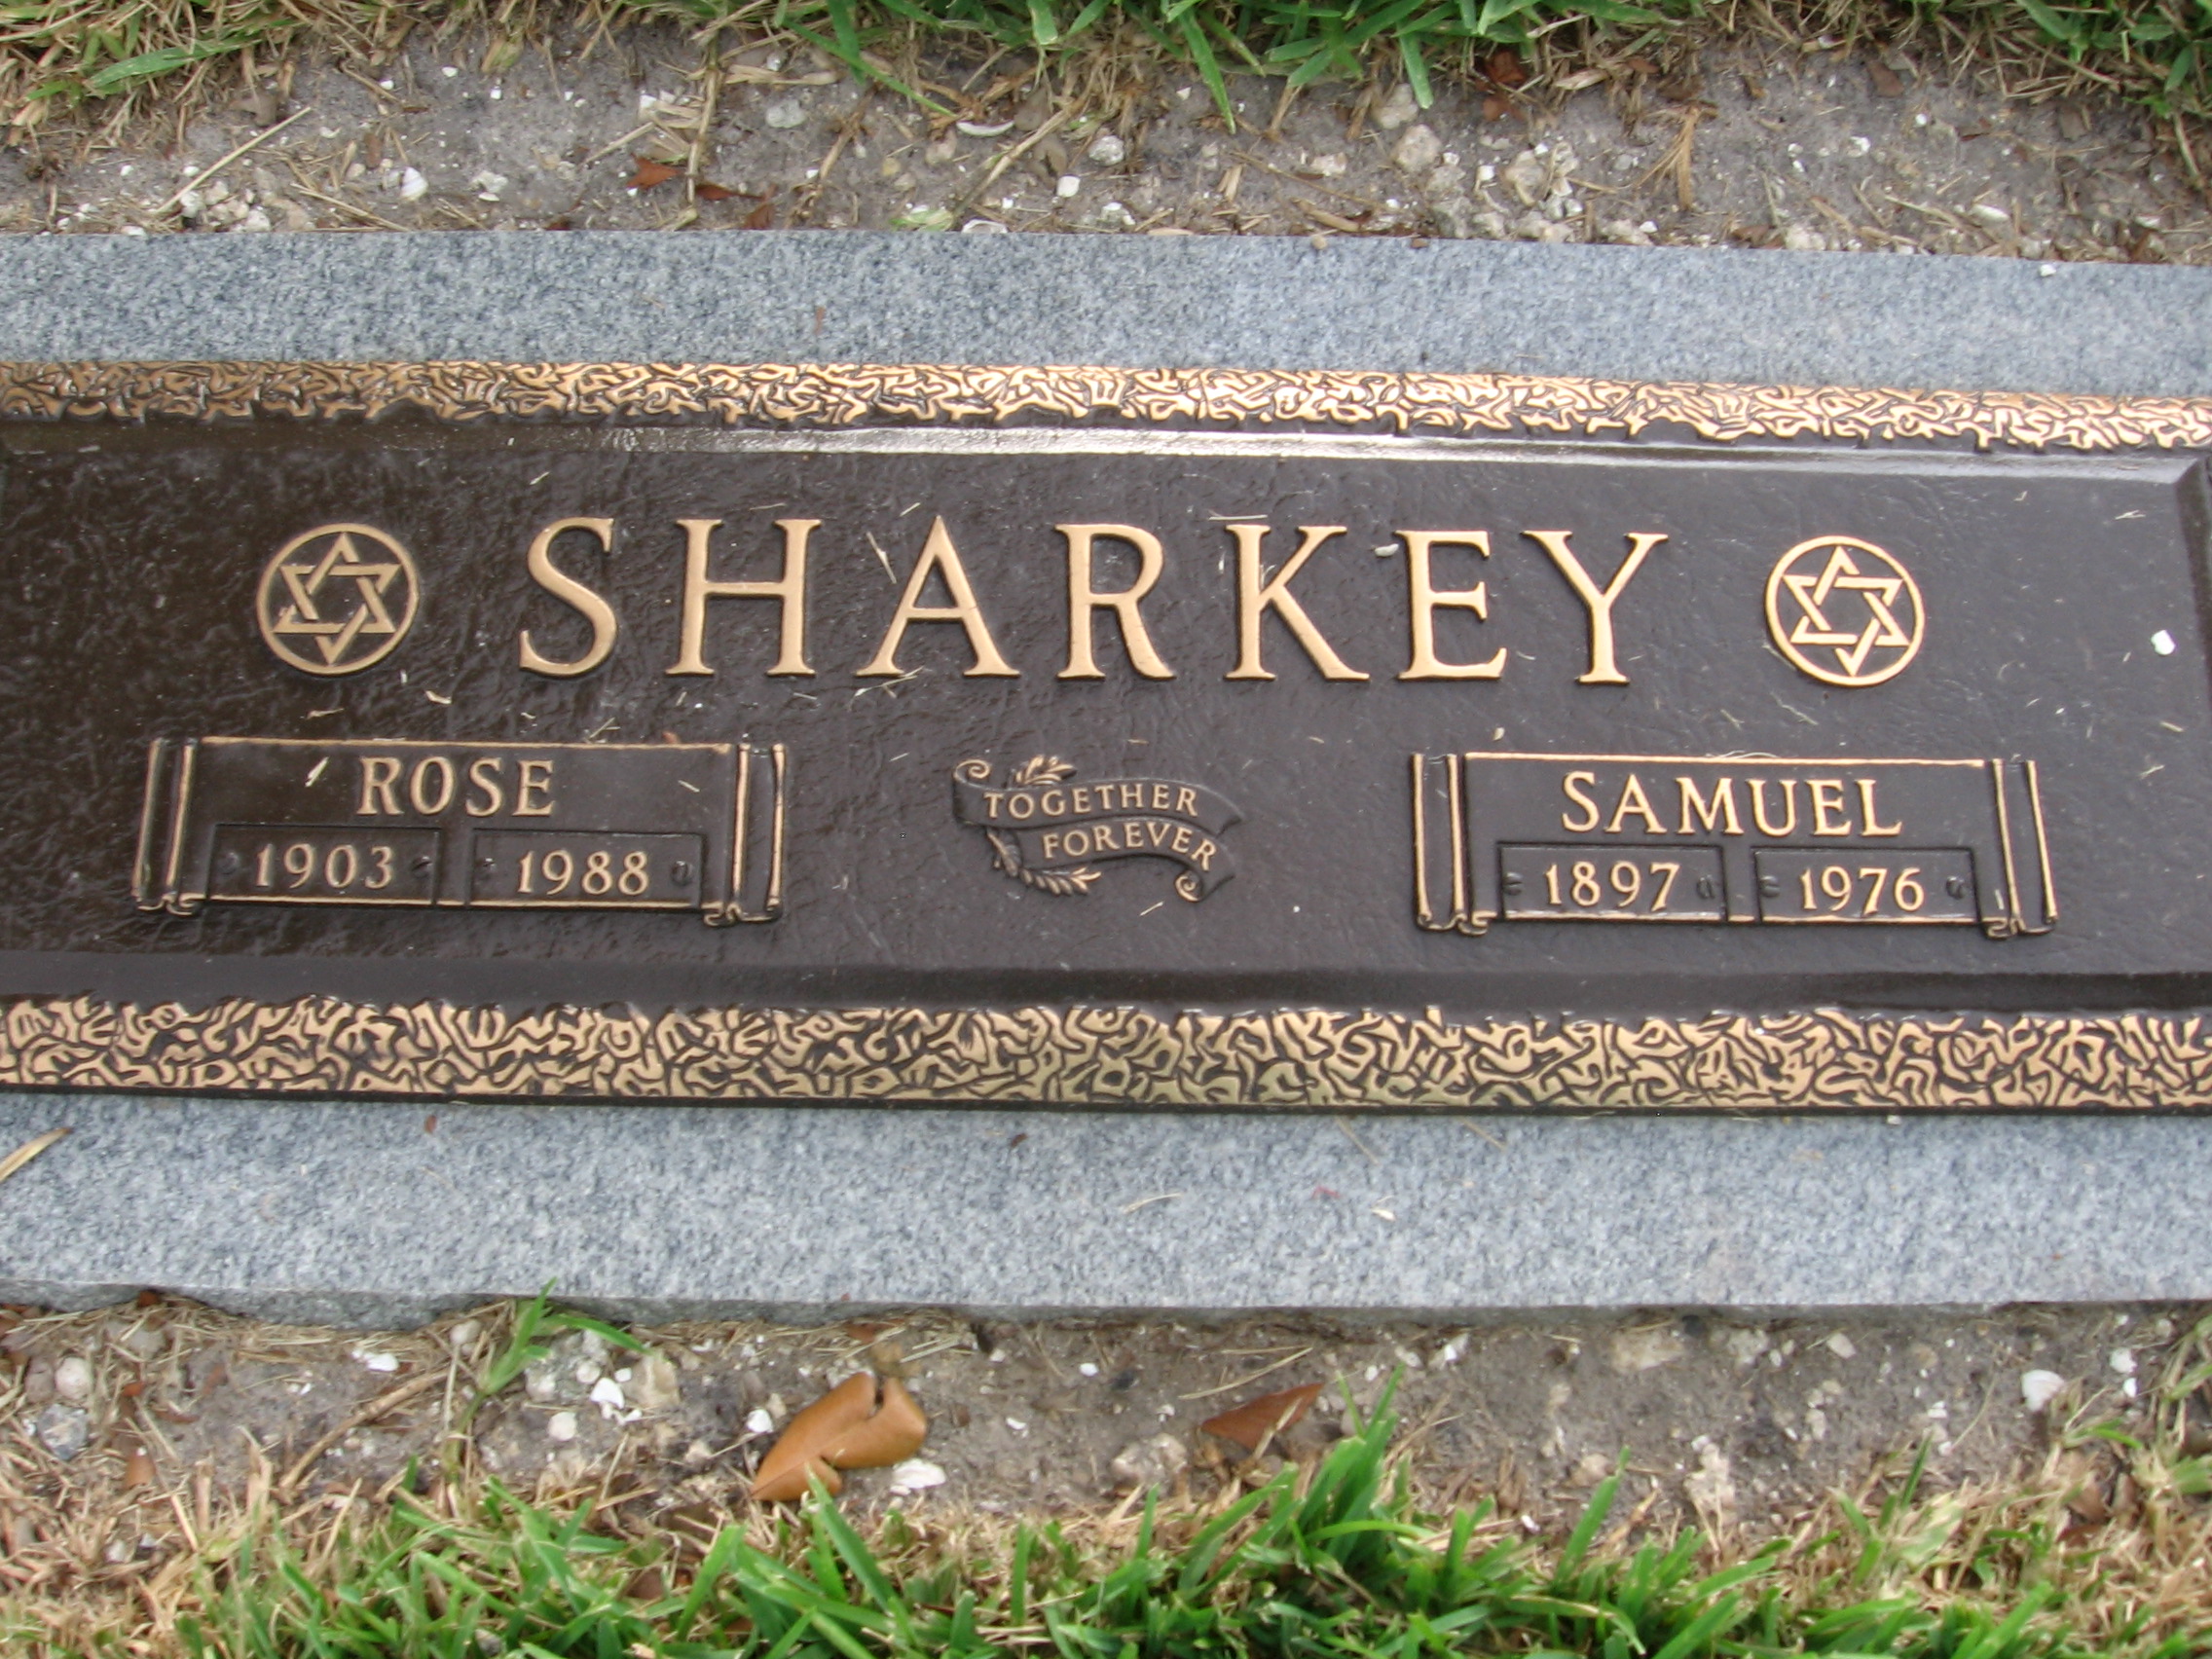 Samuel Sharkey